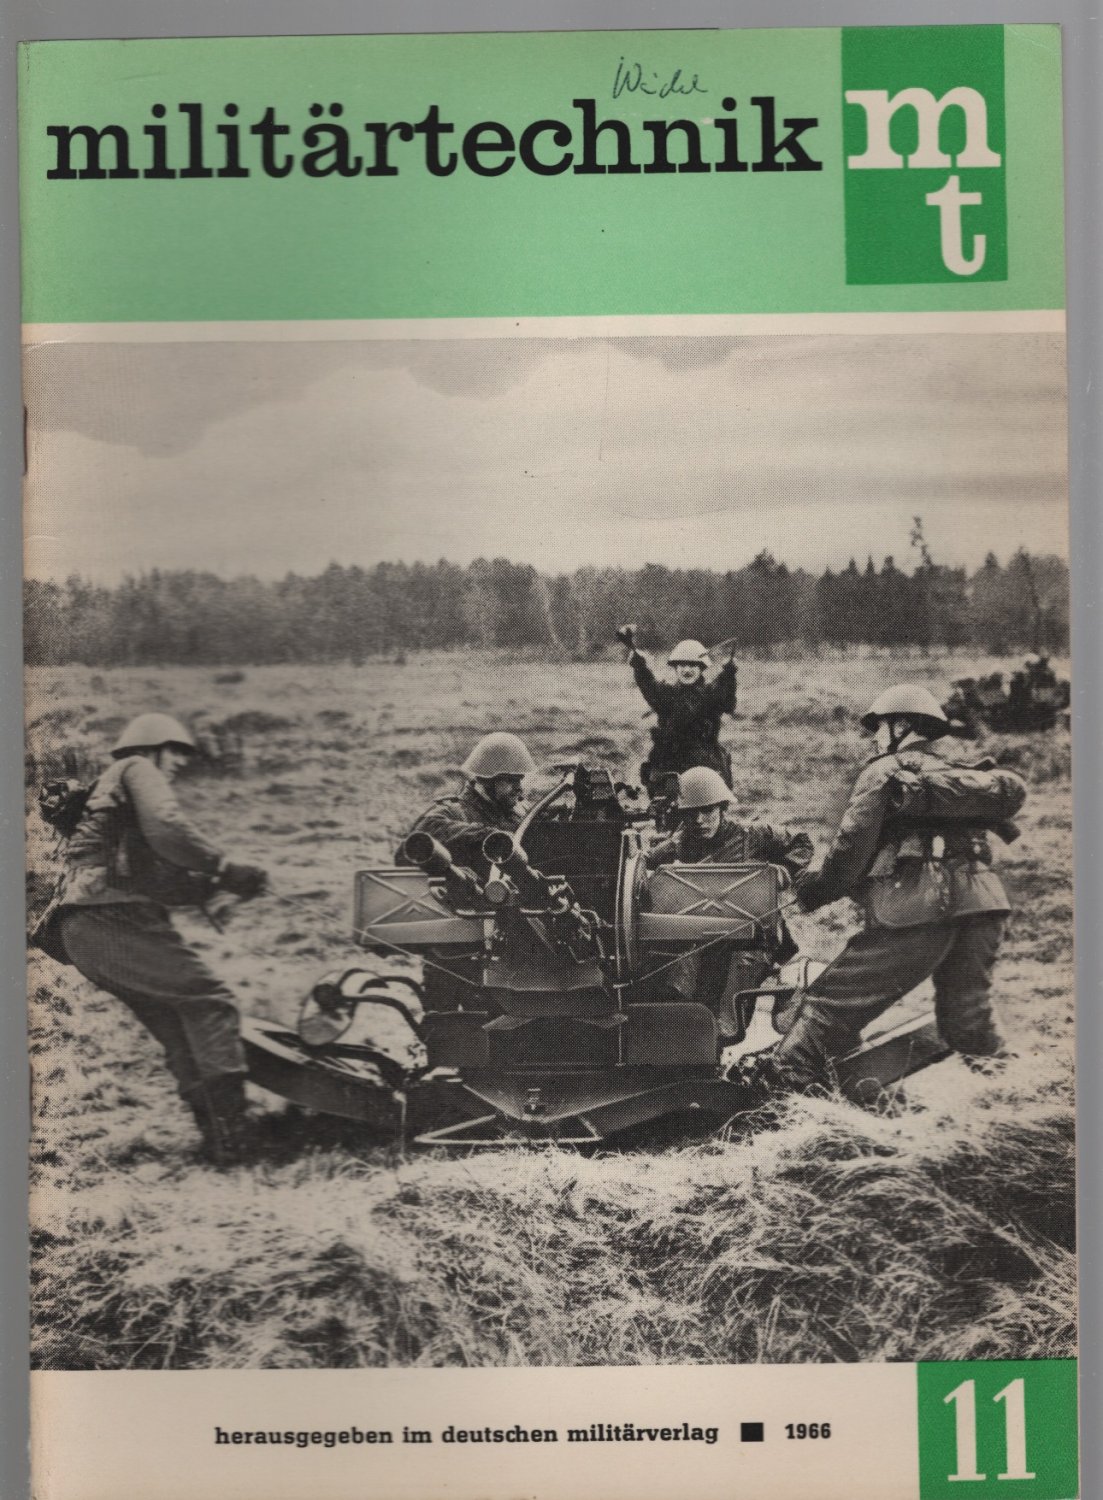 Seestreitkräfte 12.1963 Militärverlag Militärtechnik Fachzeitschrift Land Luft 